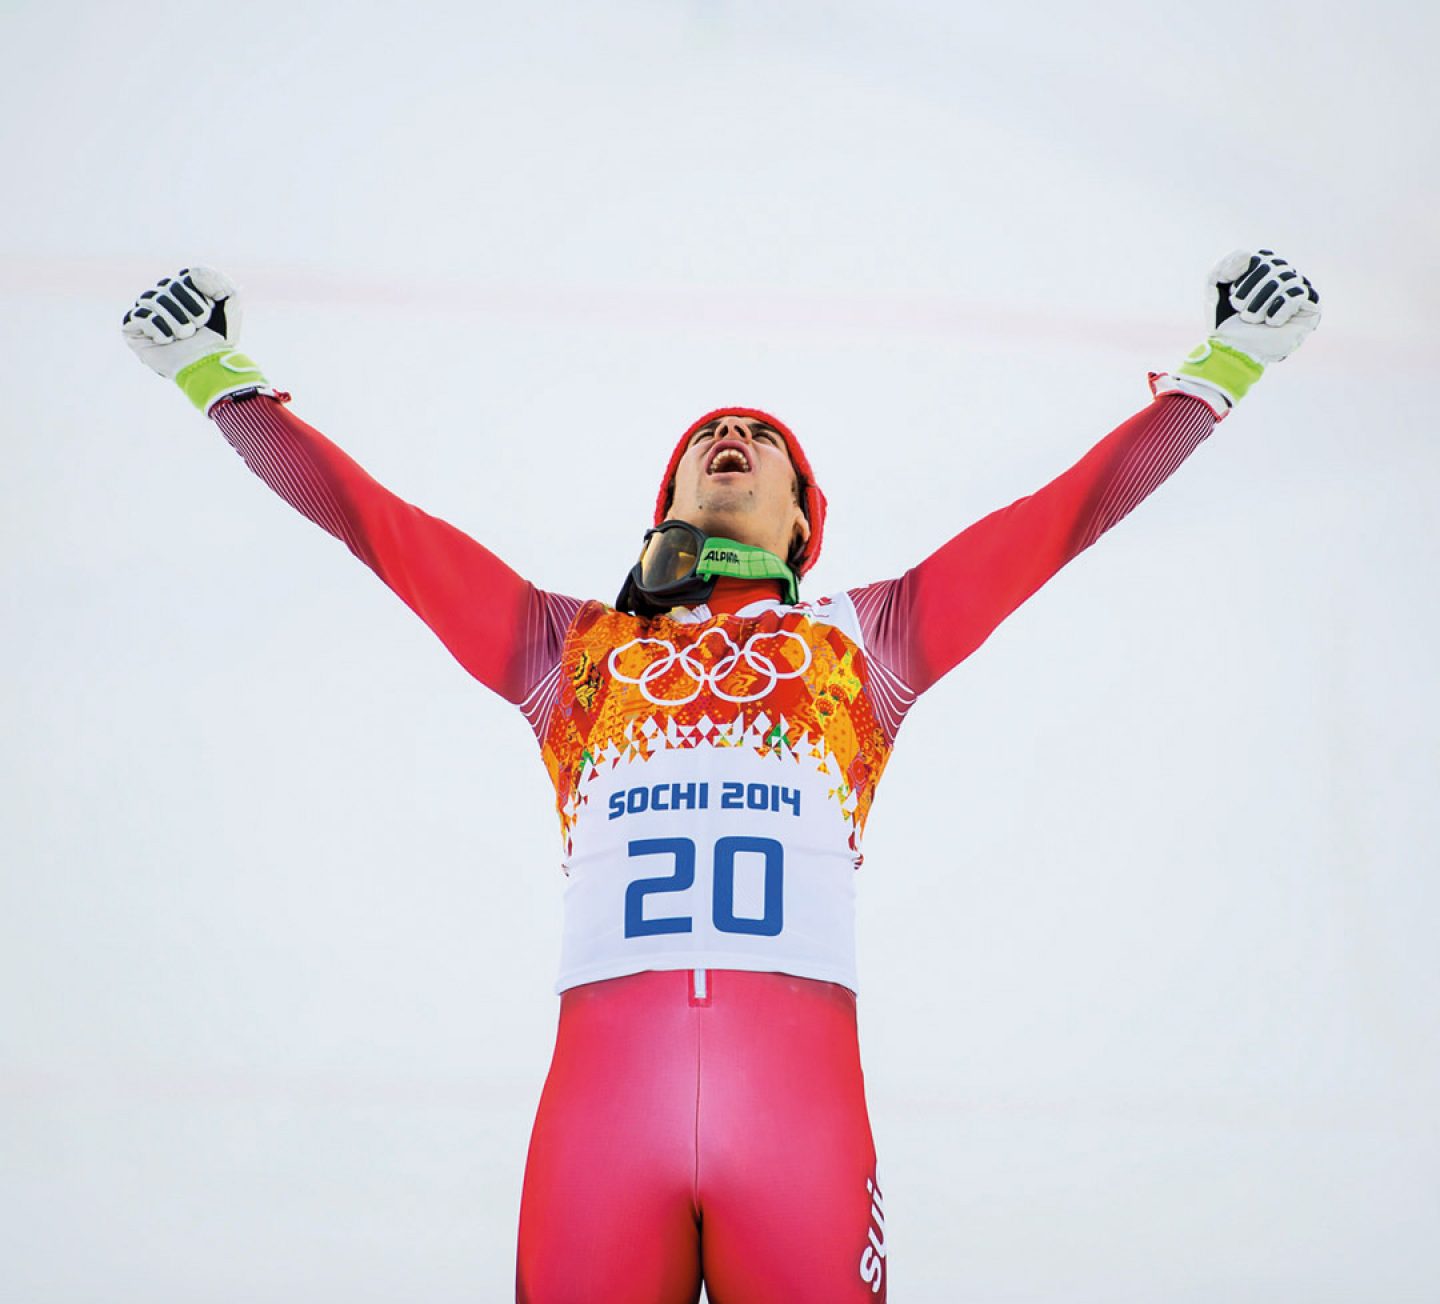 Son plus grand succès au temps de sa jeunesse a été la médaille de bronze en slalom lors des Championnats du monde juniors au Québec en 2006.